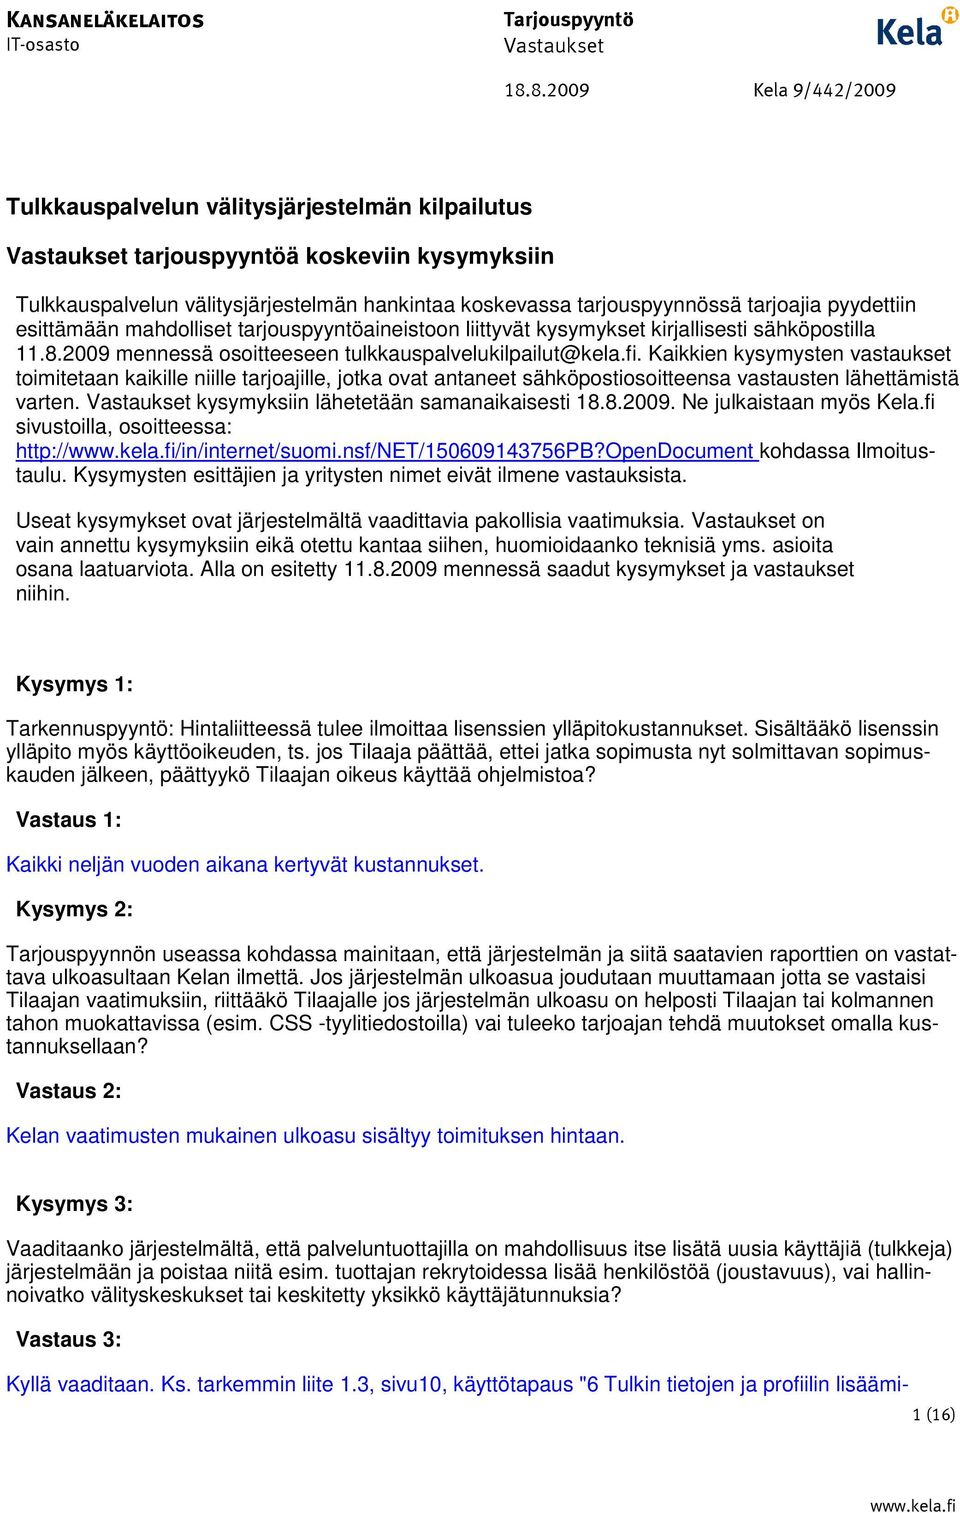 pyydettiin esittämään mahdolliset tarjouspyyntöaineistoon liittyvät kysymykset kirjallisesti sähköpostilla 11.8.2009 mennessä osoitteeseen tulkkauspalvelukilpailut@kela.fi.